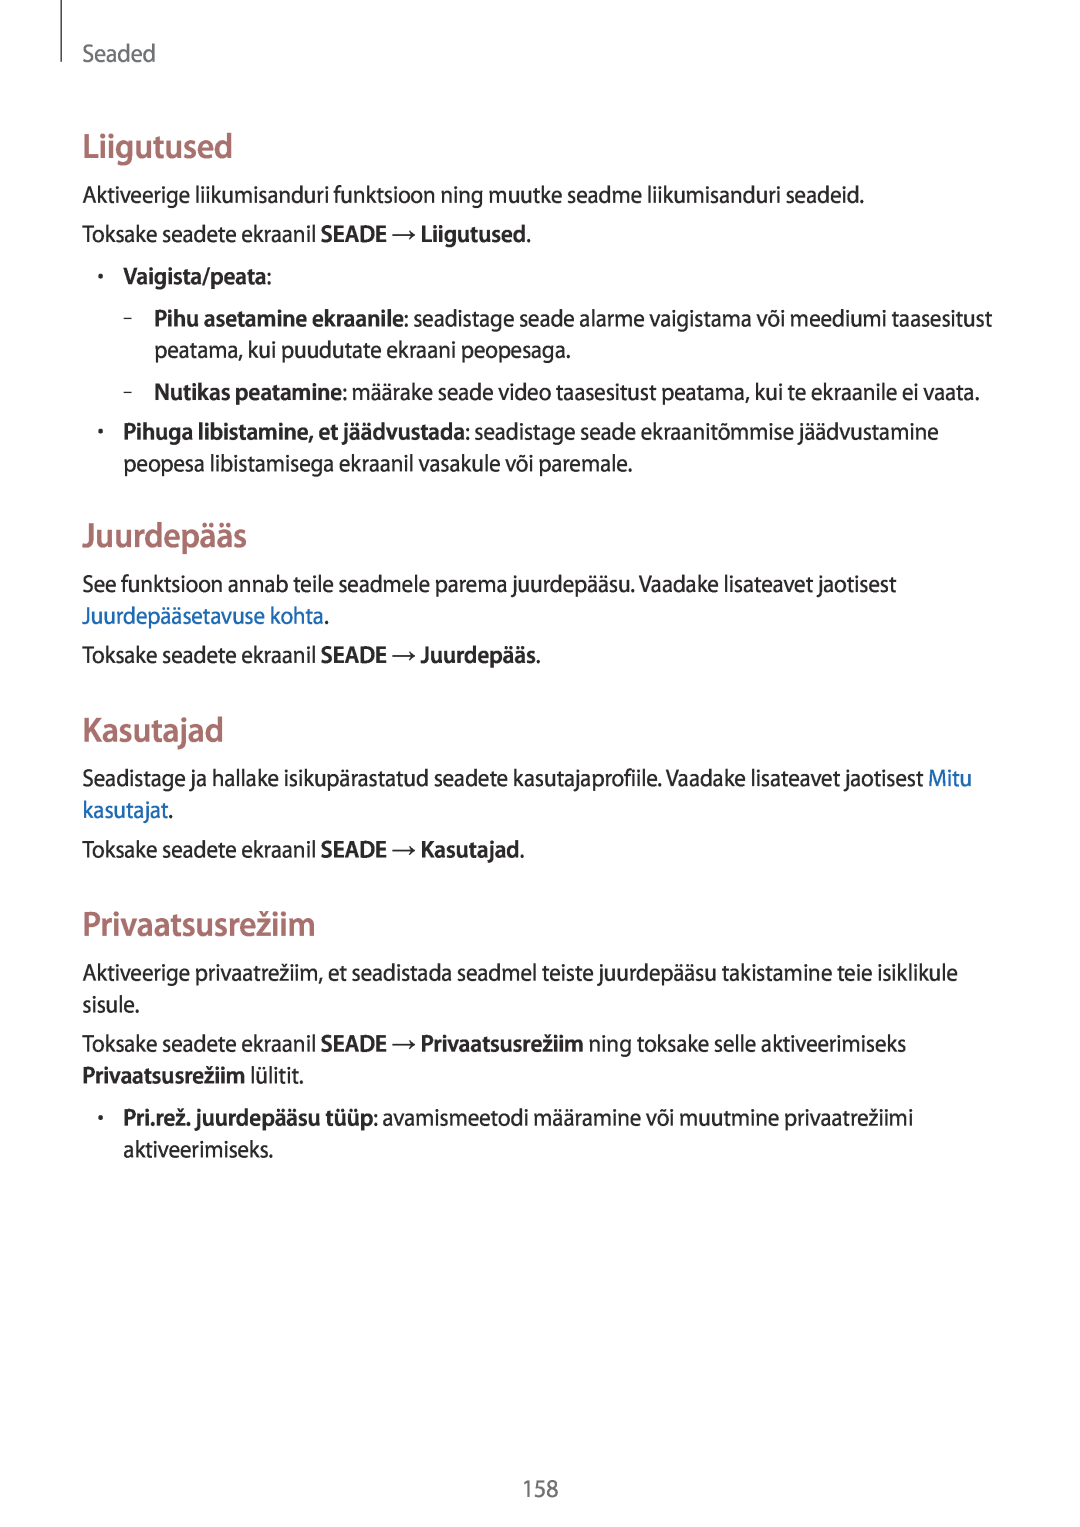 Samsung SM-T700NZWASEB, SM-T700NTSASEB manual Liigutused, Juurdepääs, Kasutajad, Privaatsusrežiim, Vaigista/peata, Seaded 